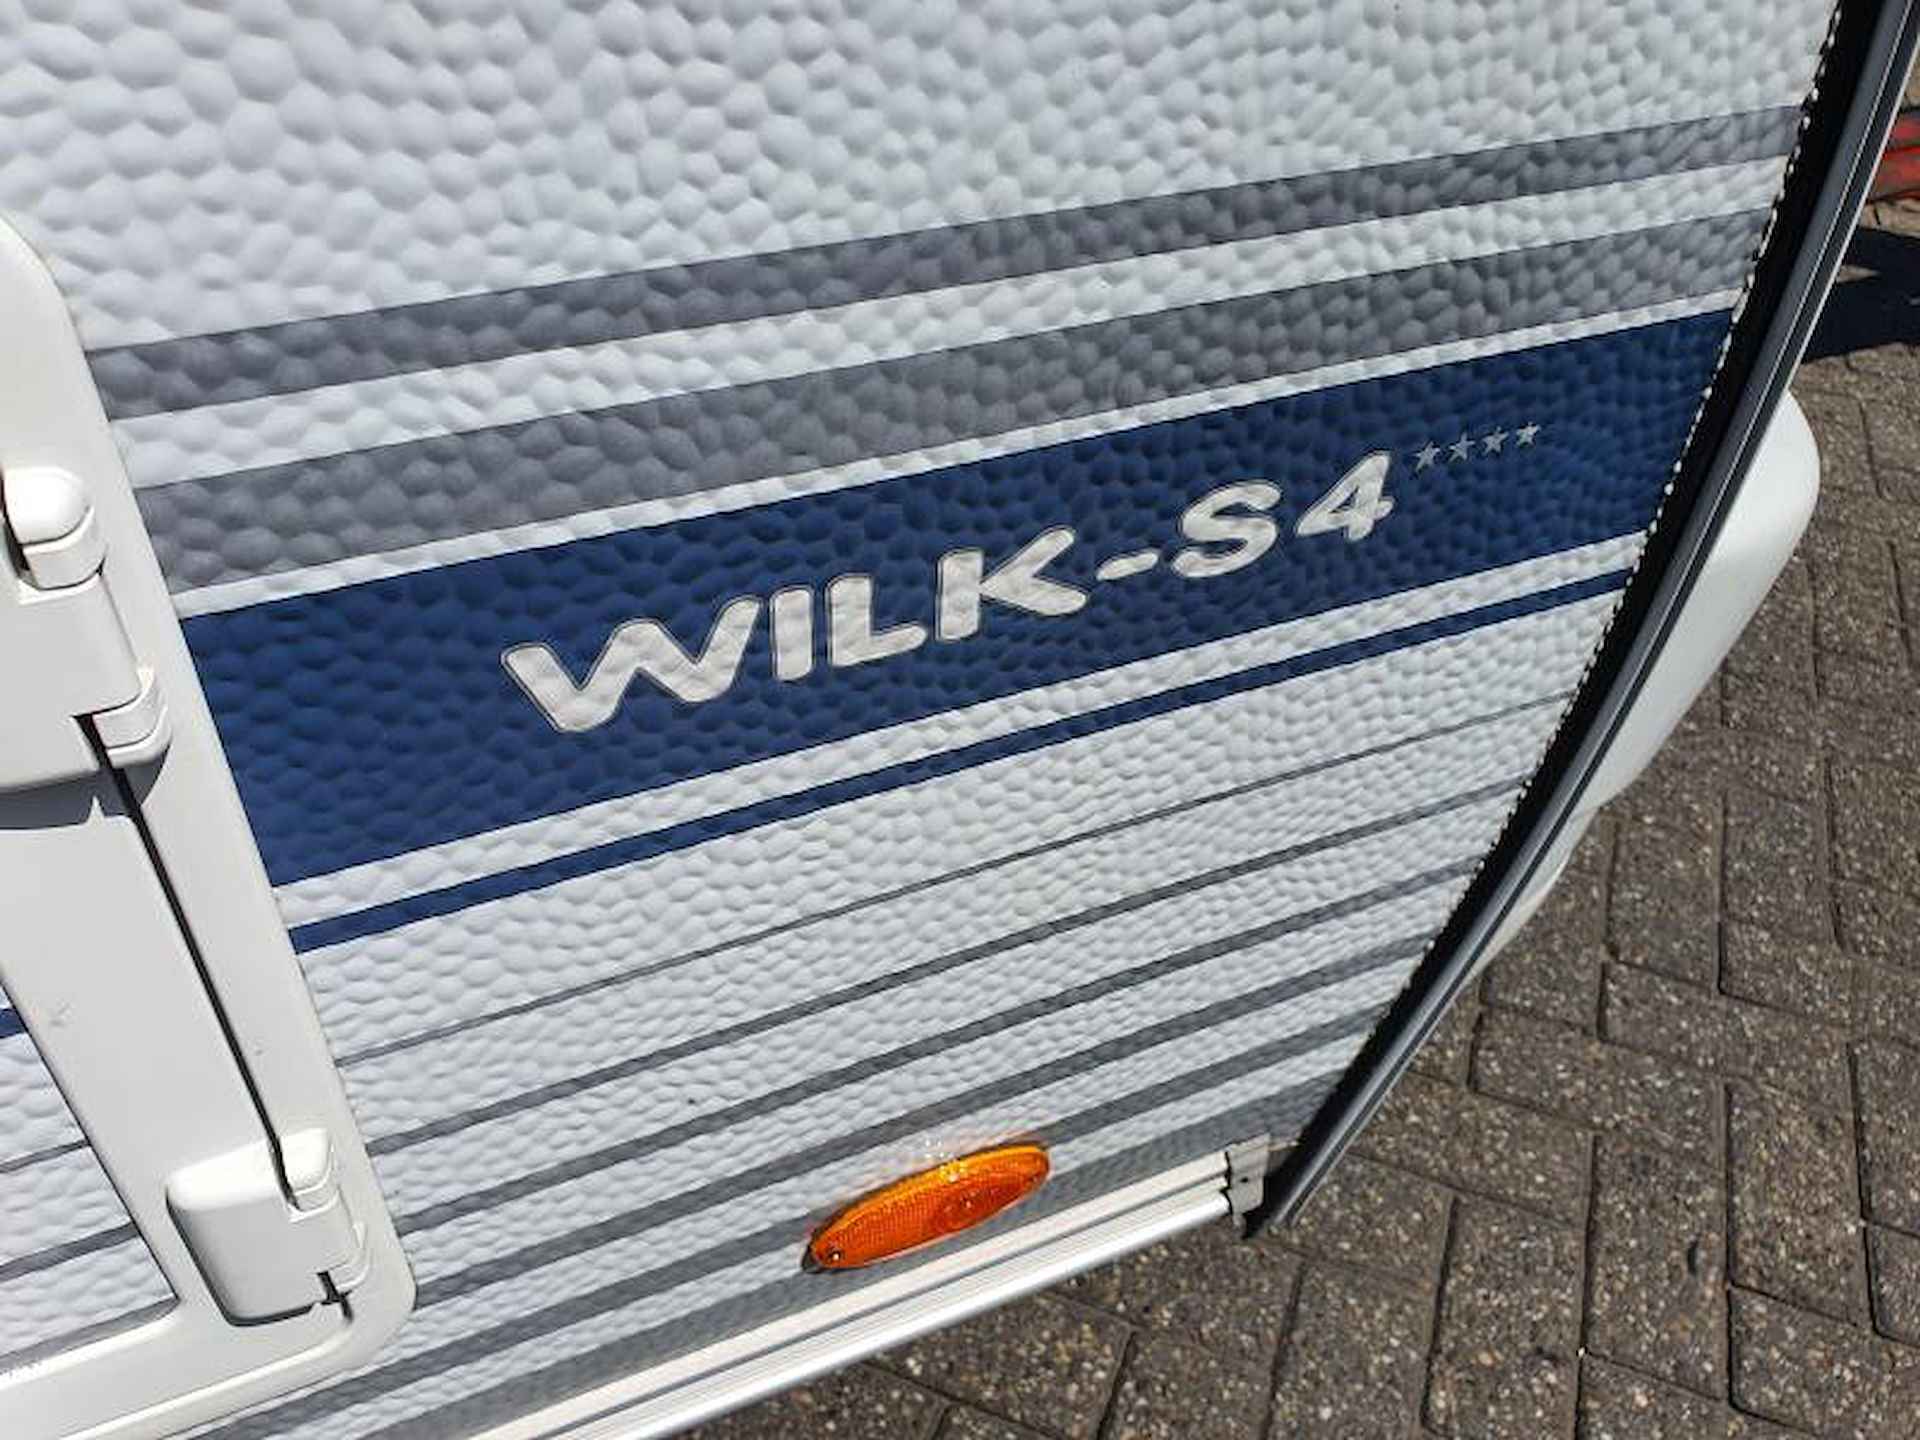 Wilk S4 400 MD NIEUWE VOORTENT - 8/24